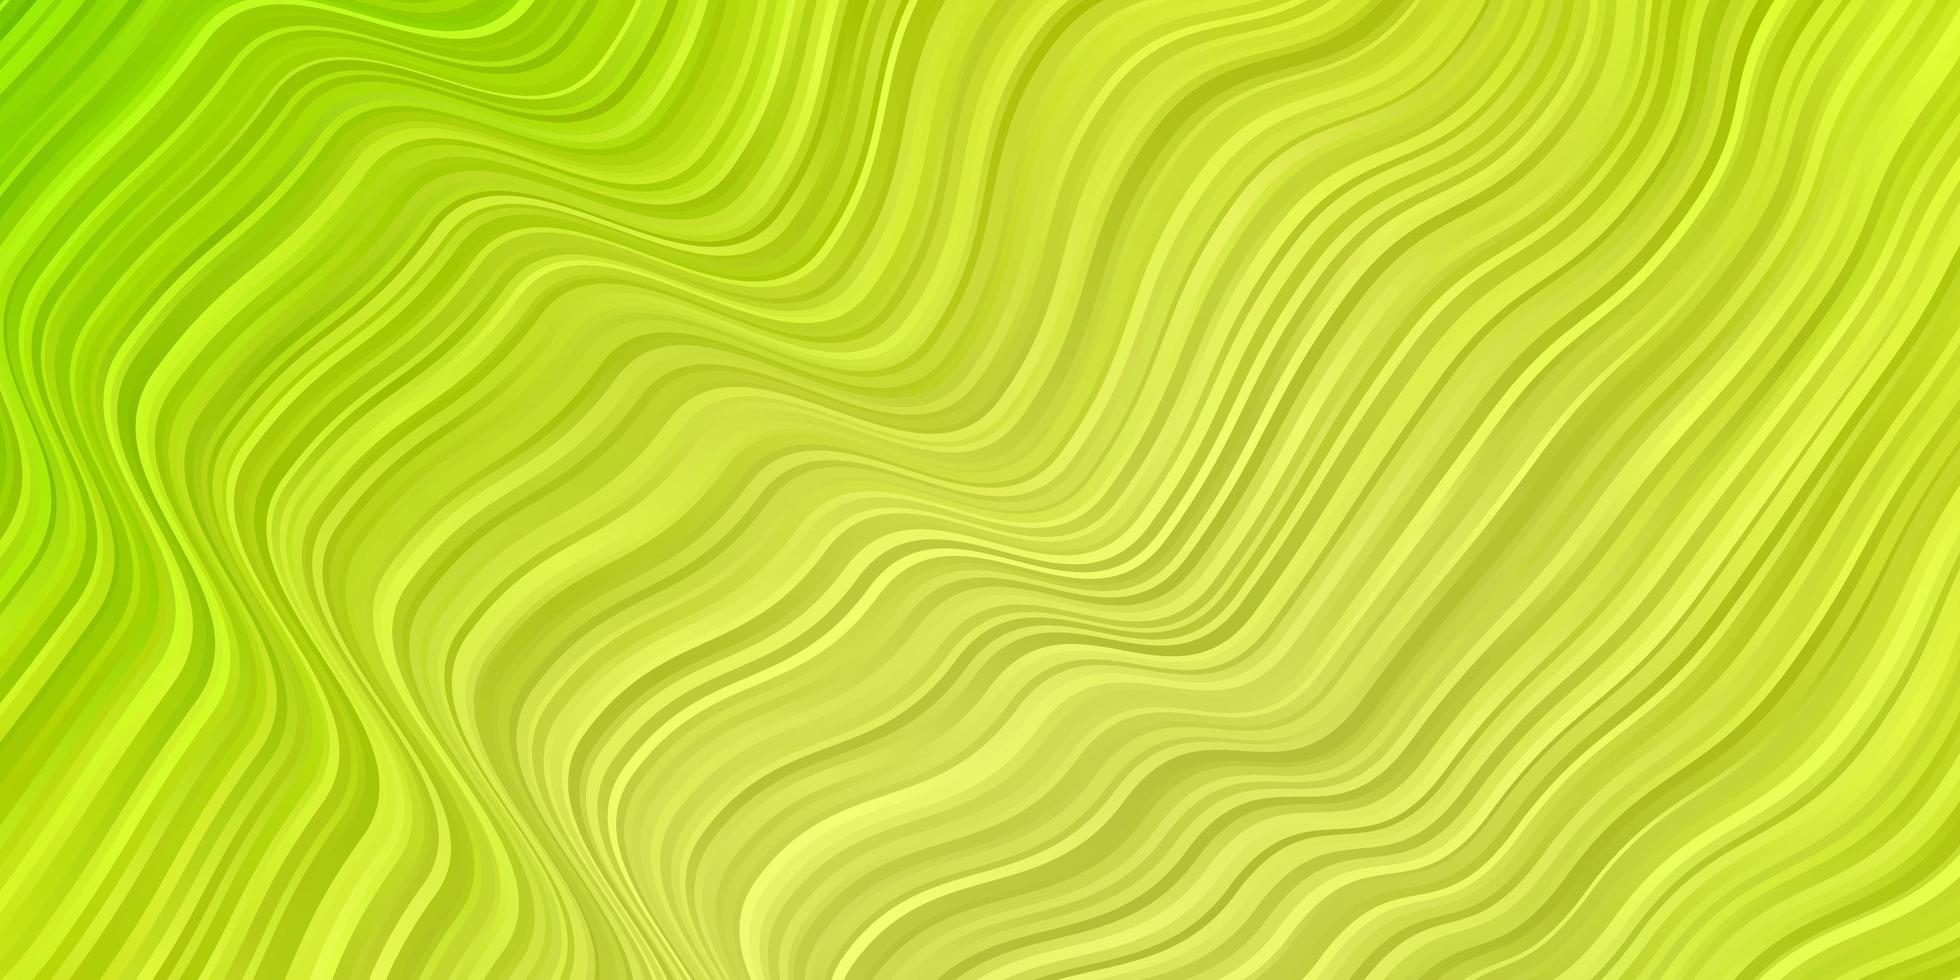 modello vettoriale verde chiaro, giallo con curve.